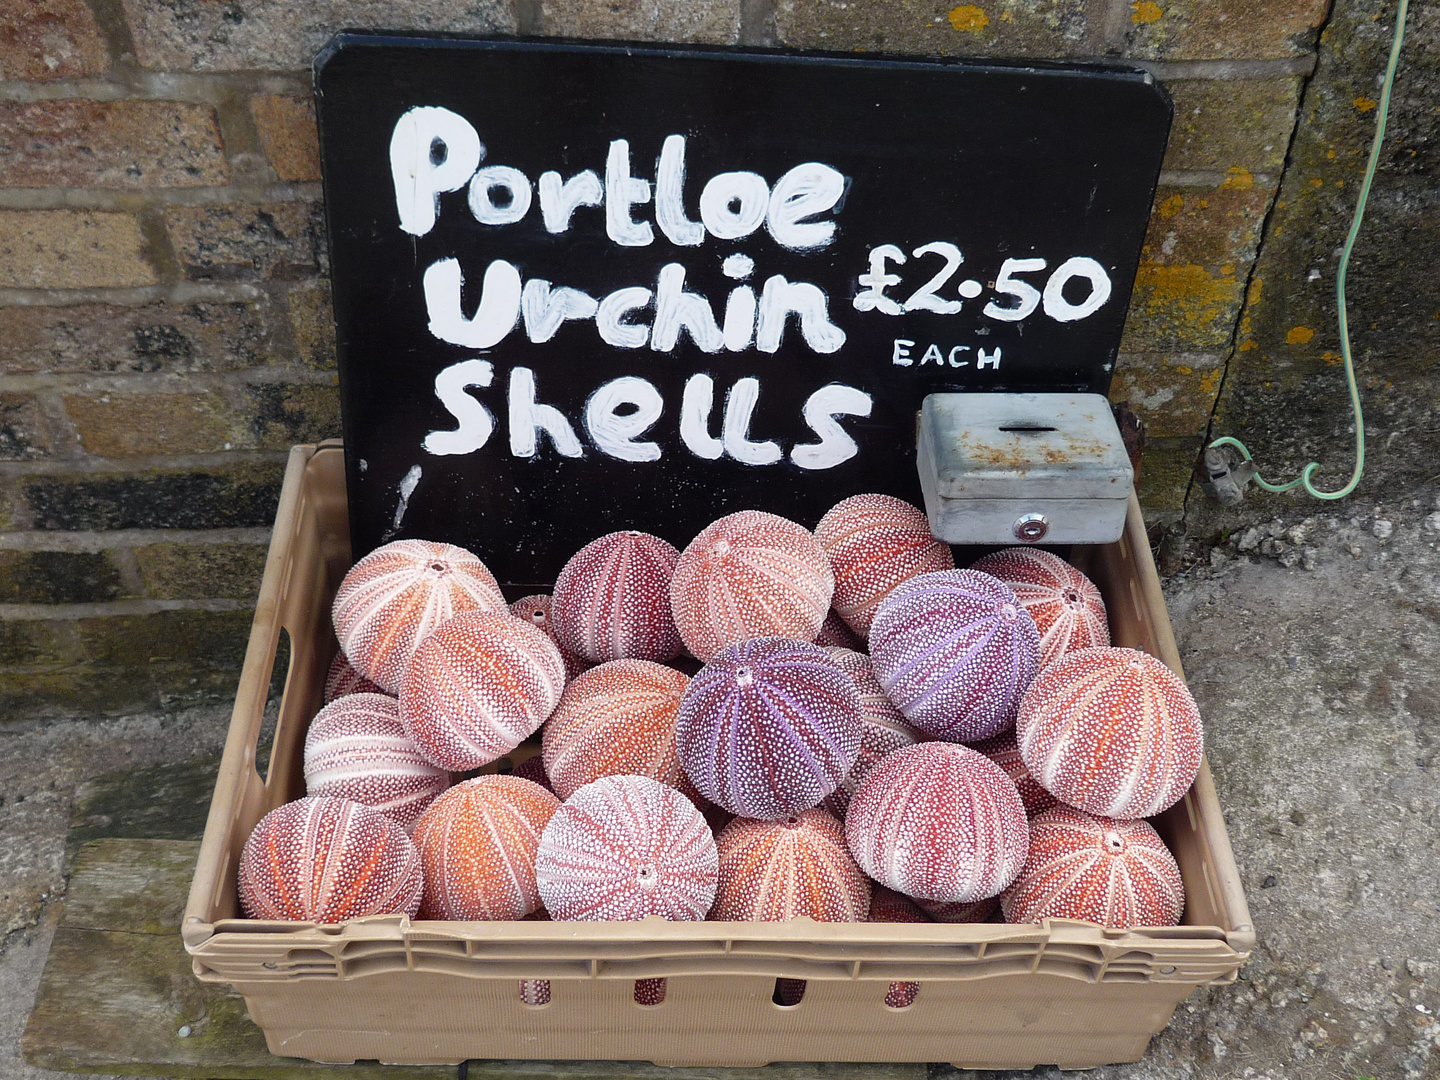 shells sells